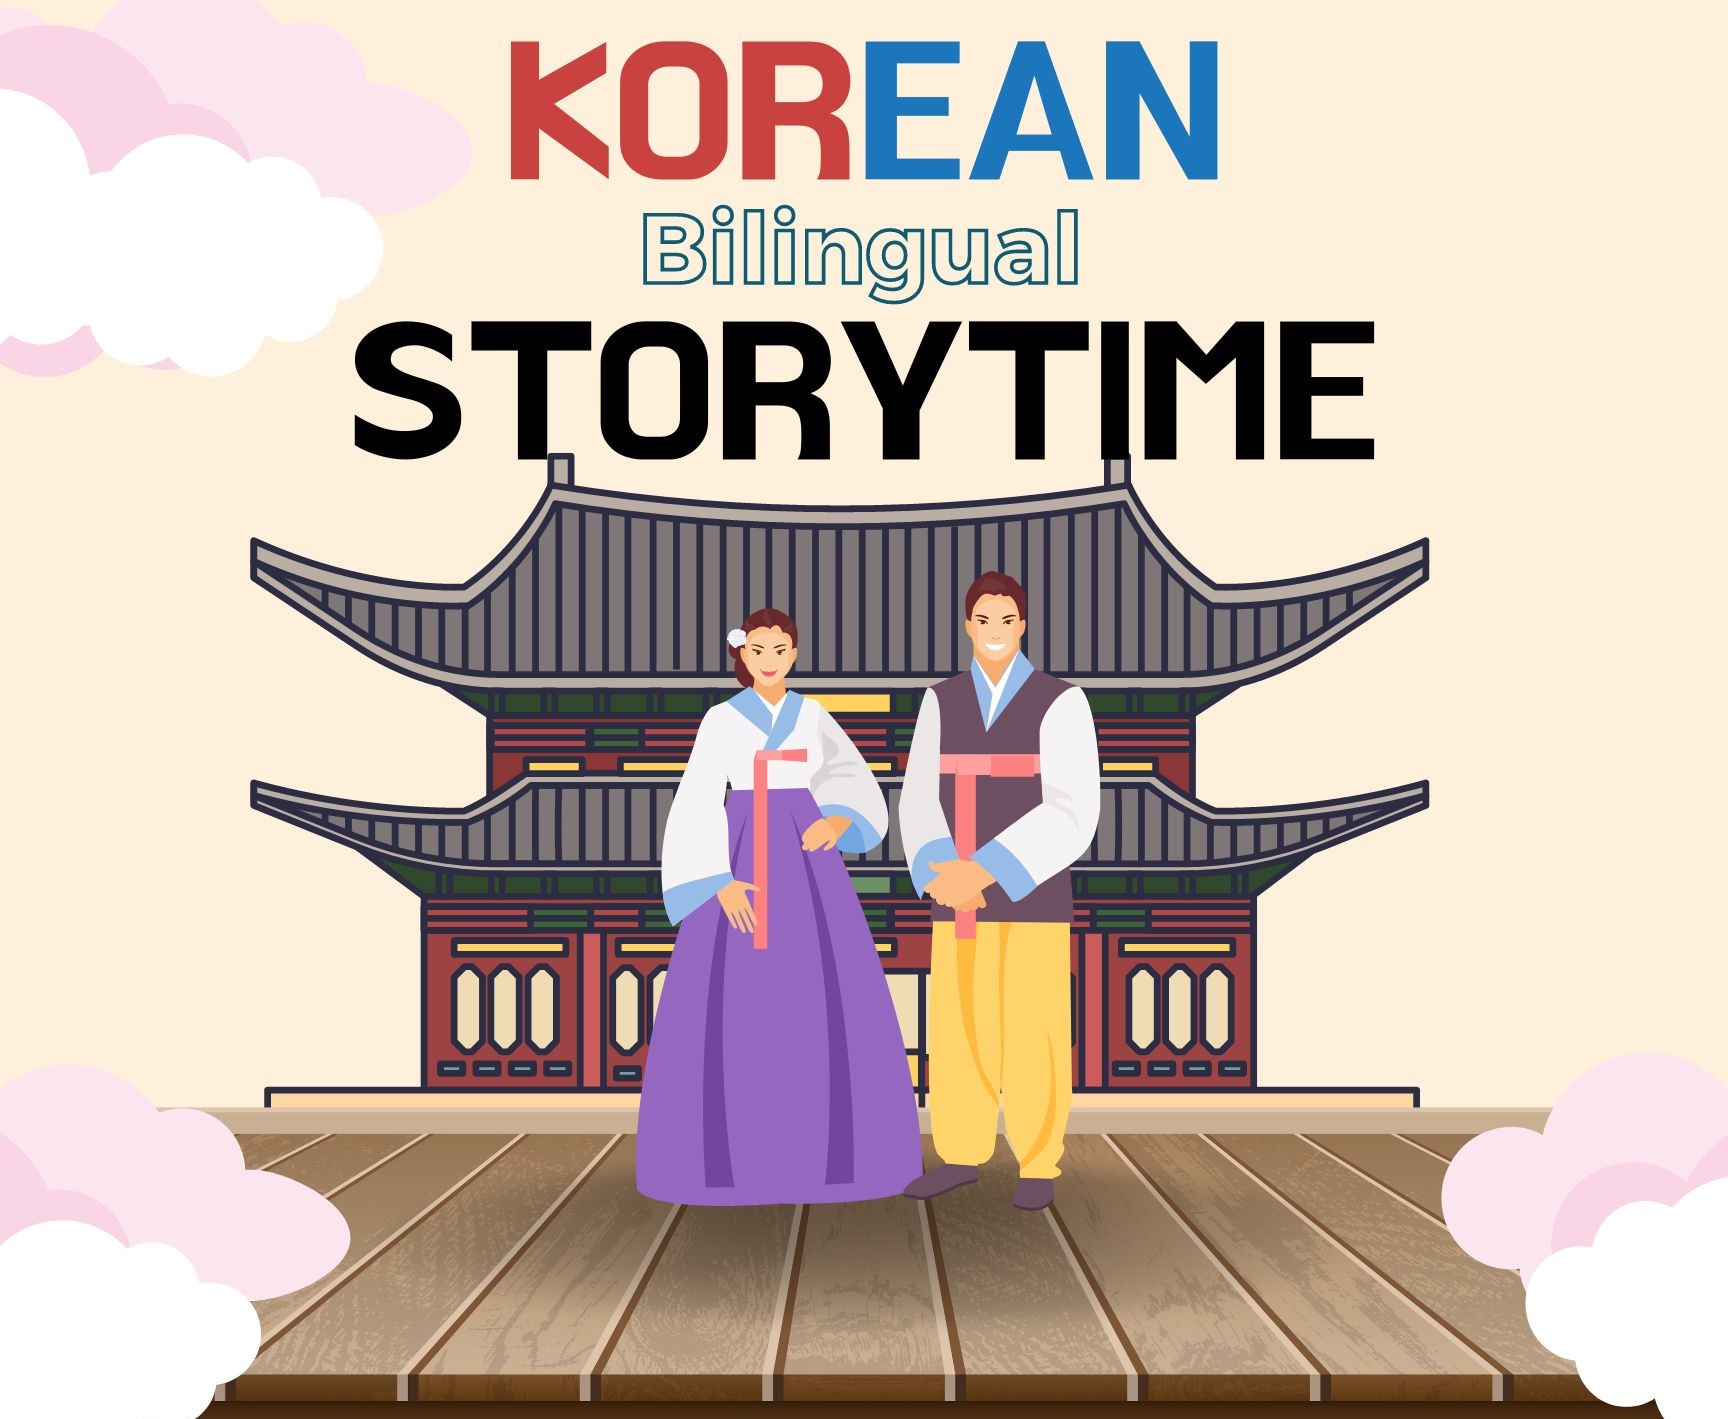 Korean Bilingual Storytime